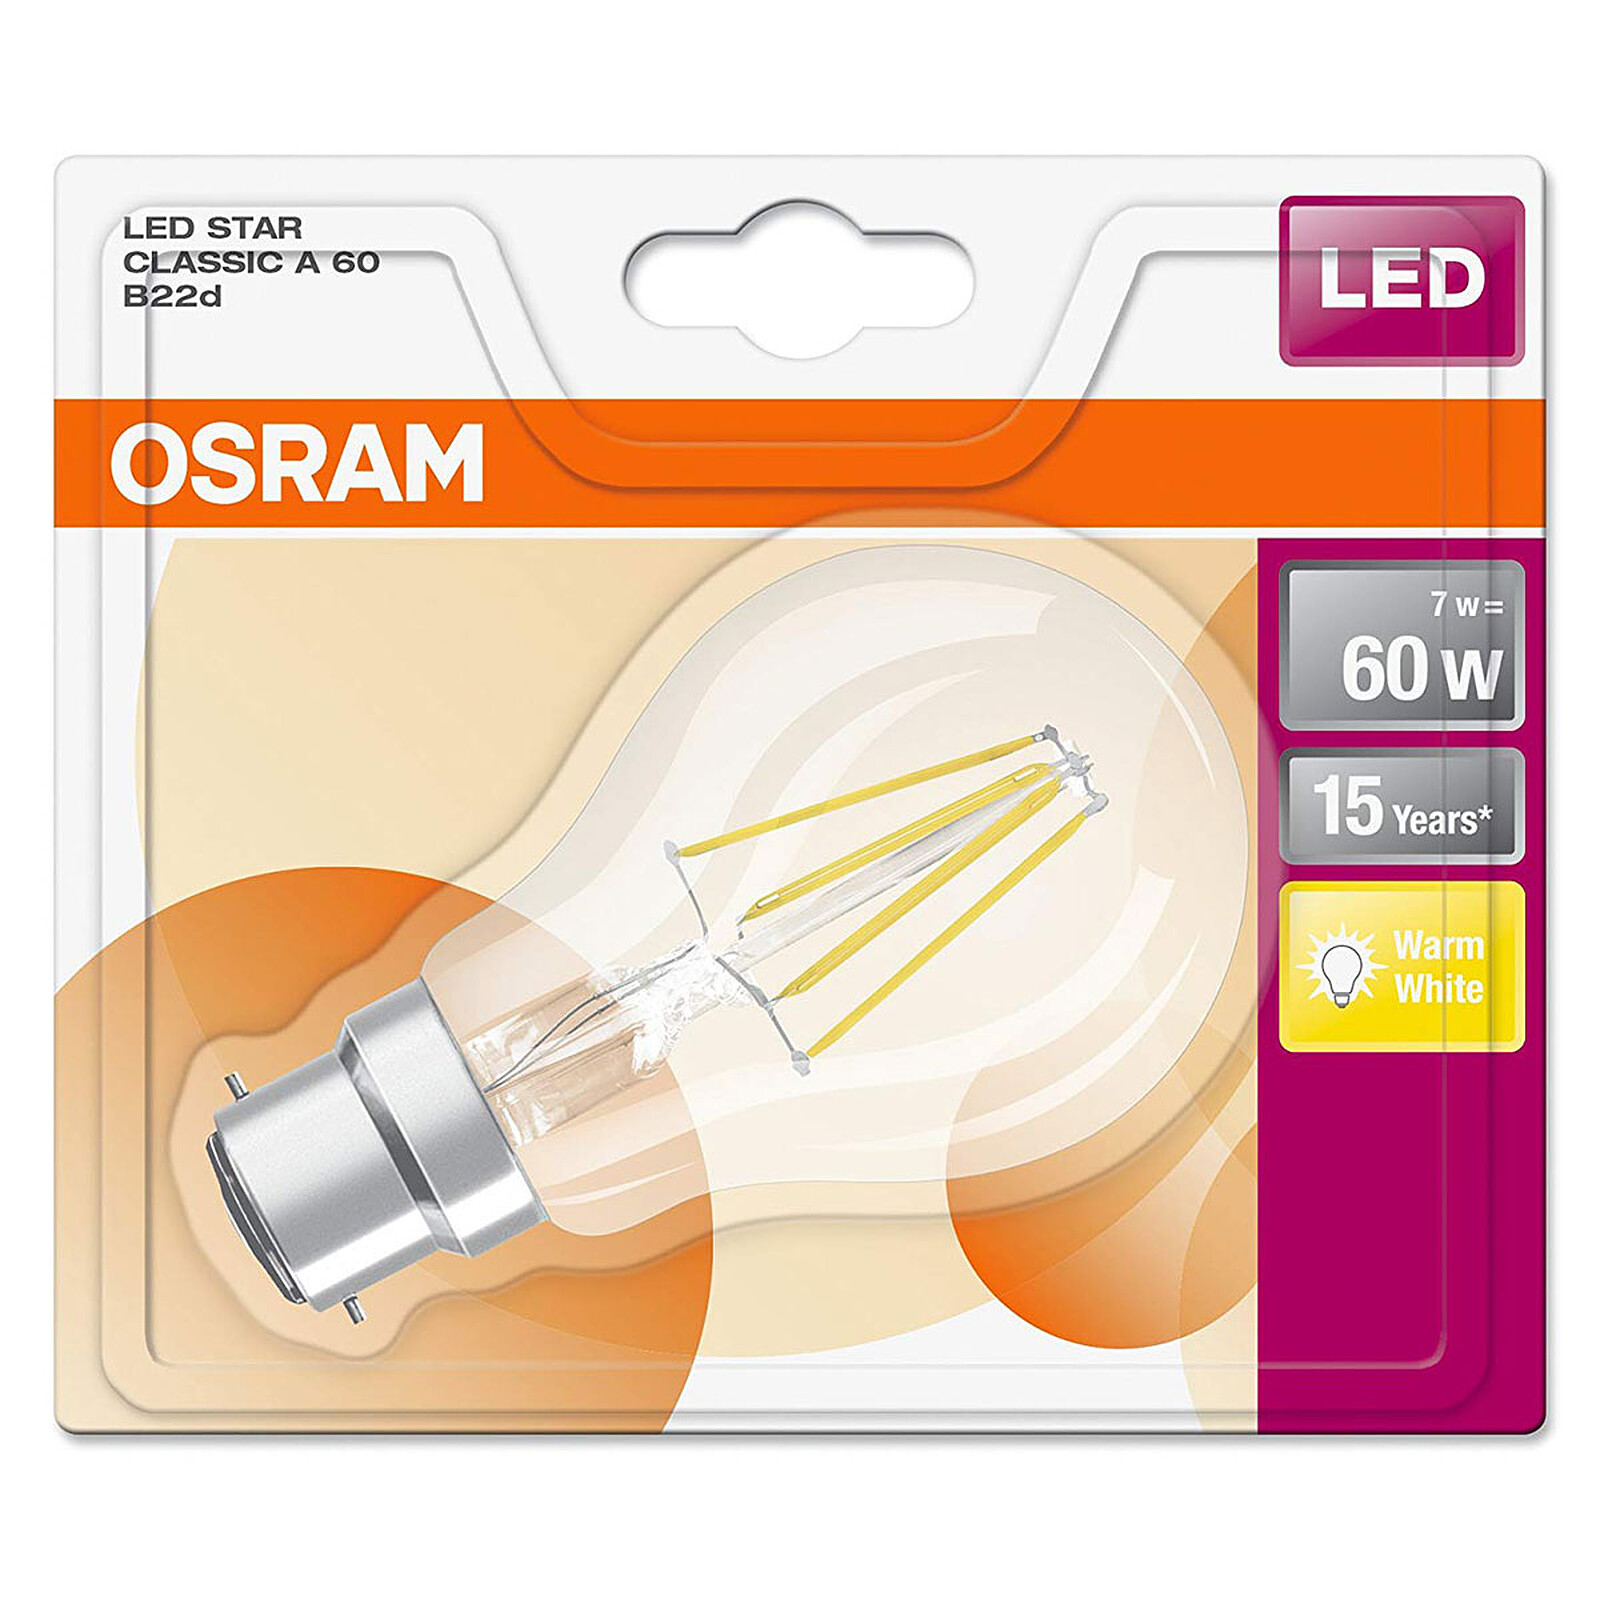 Osram complète son offre de lampes rétrofit Led homologuée